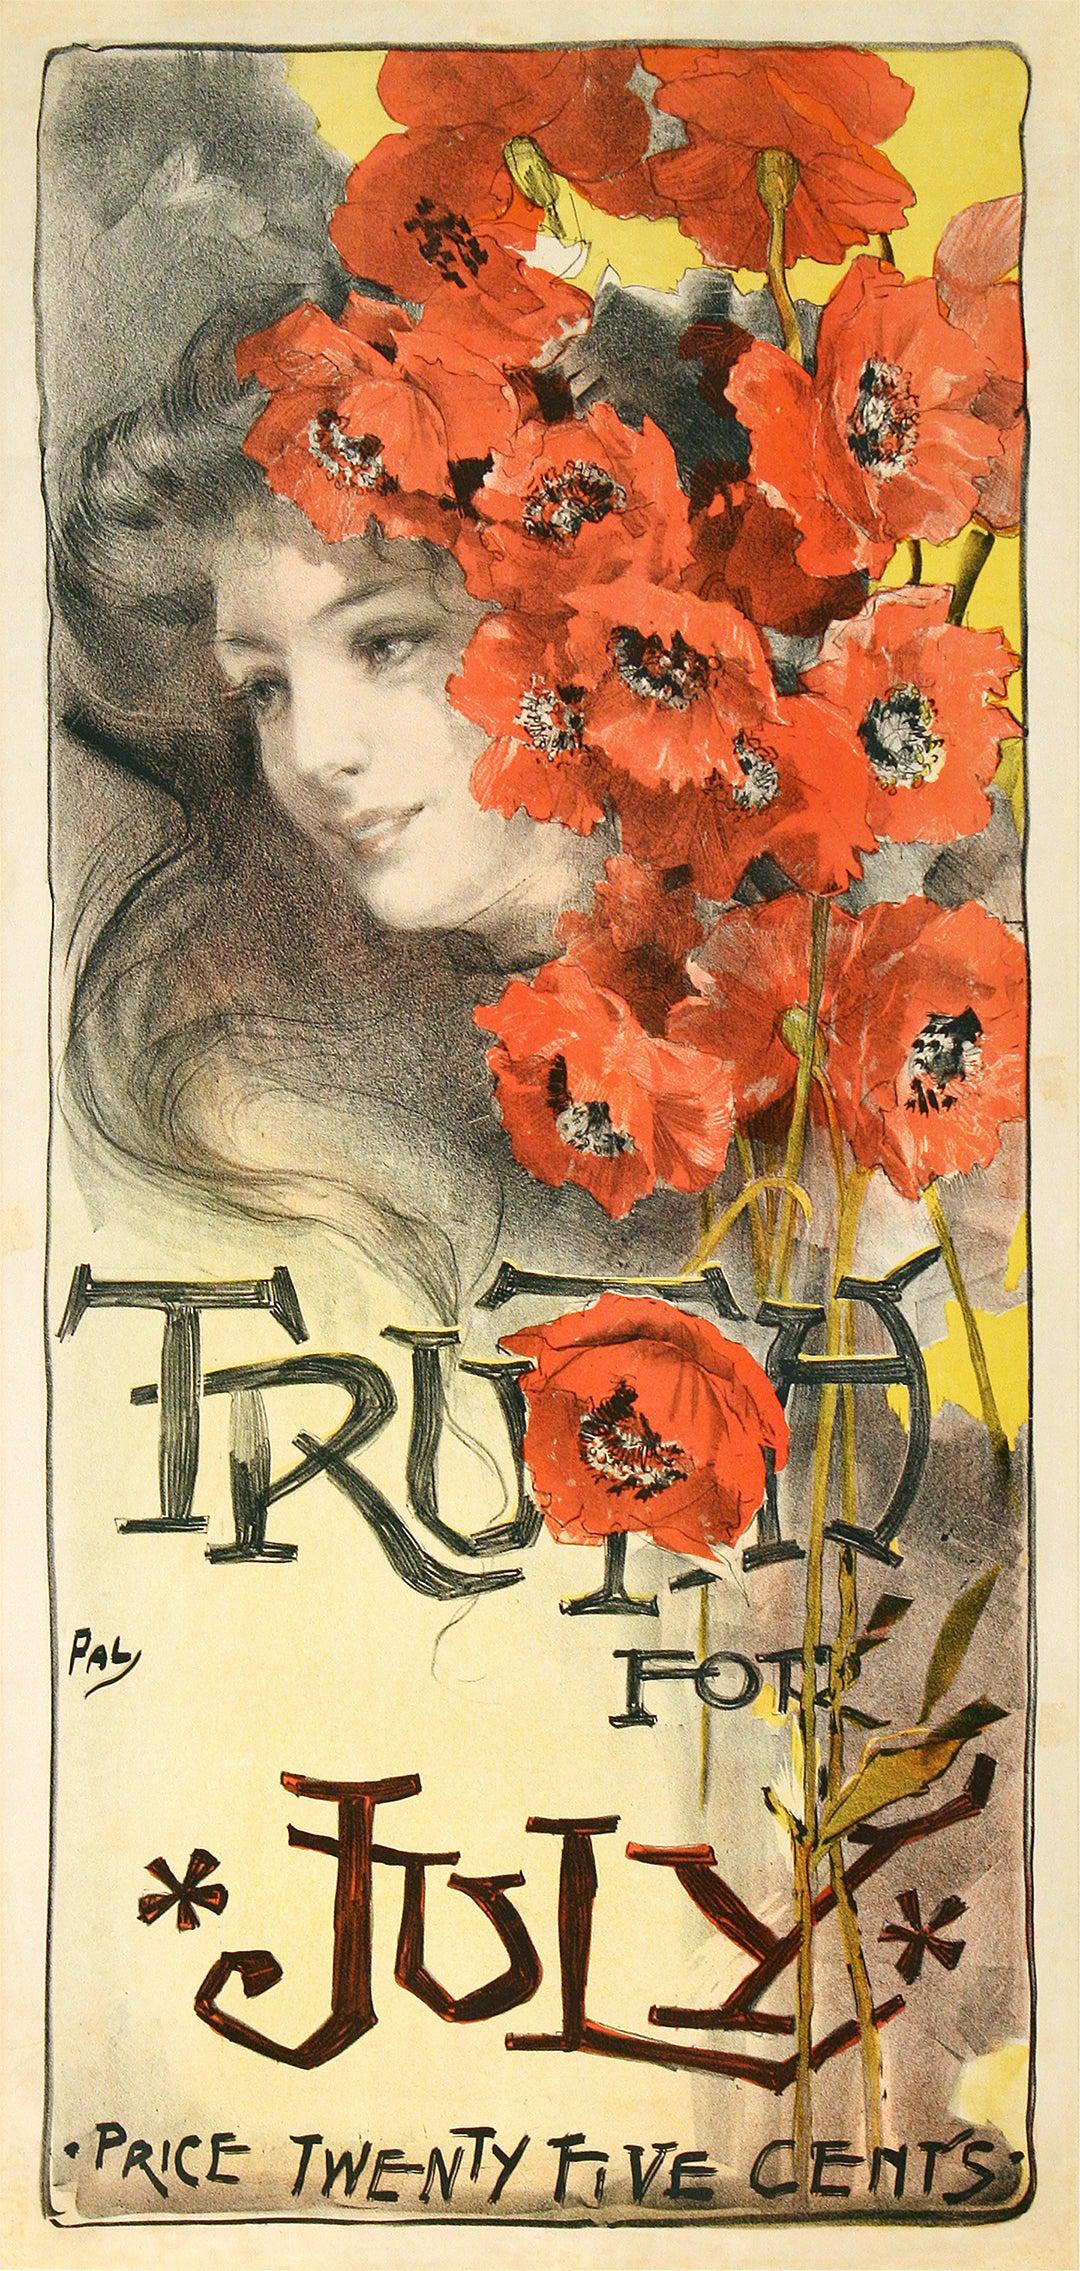 Original Pal Truth for July Vintage Magazine Poster 1901